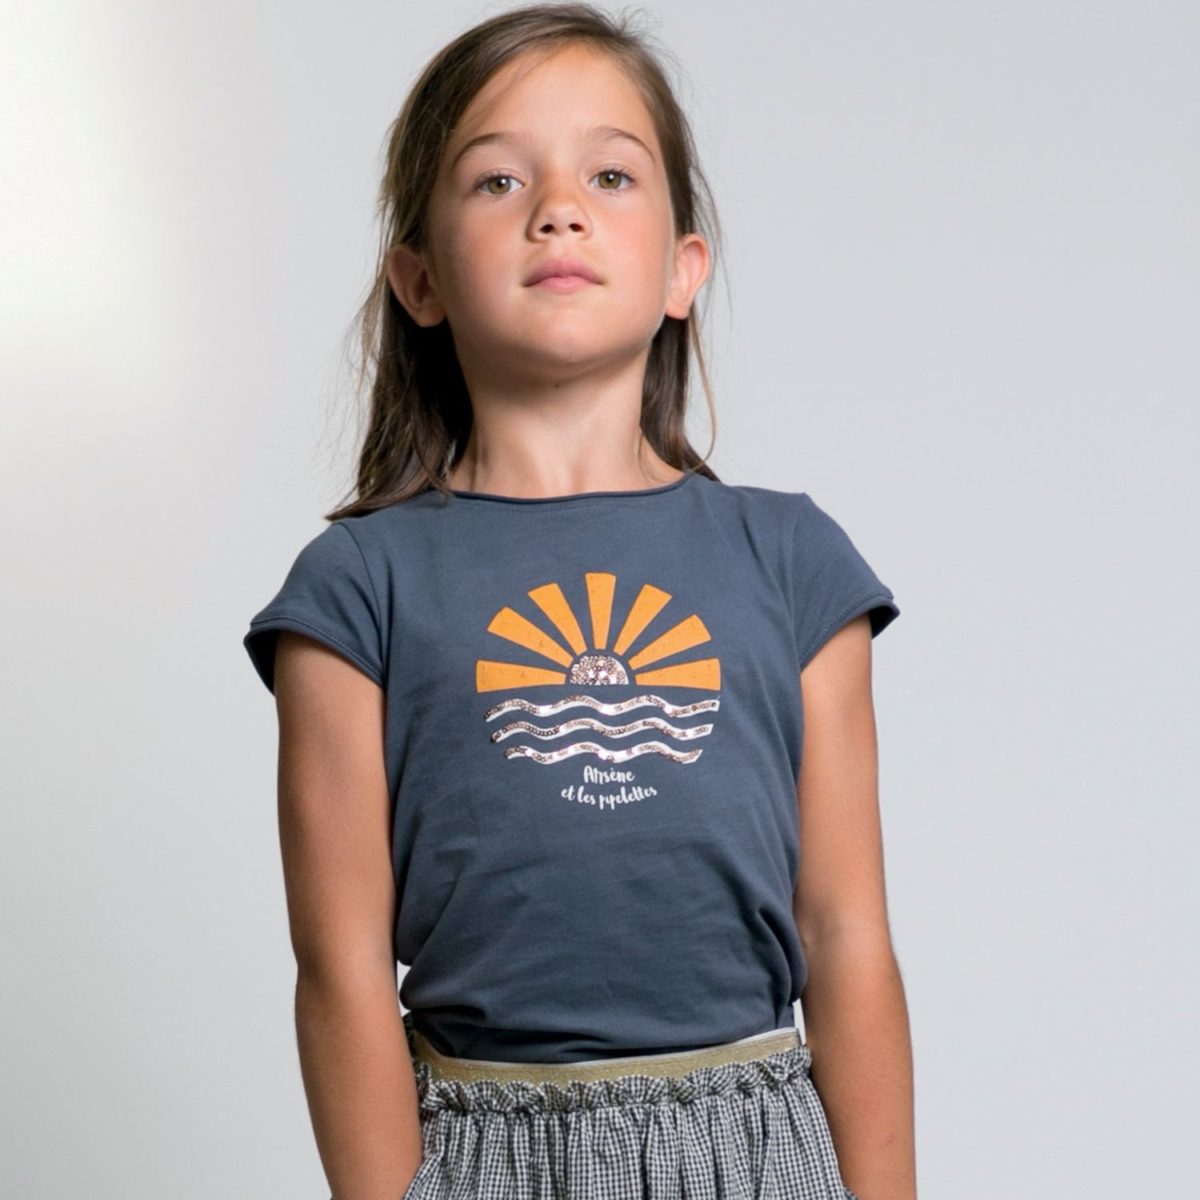 T-Shirt Stacy, aufgehende Sonne mit Pailletten, anthrazit